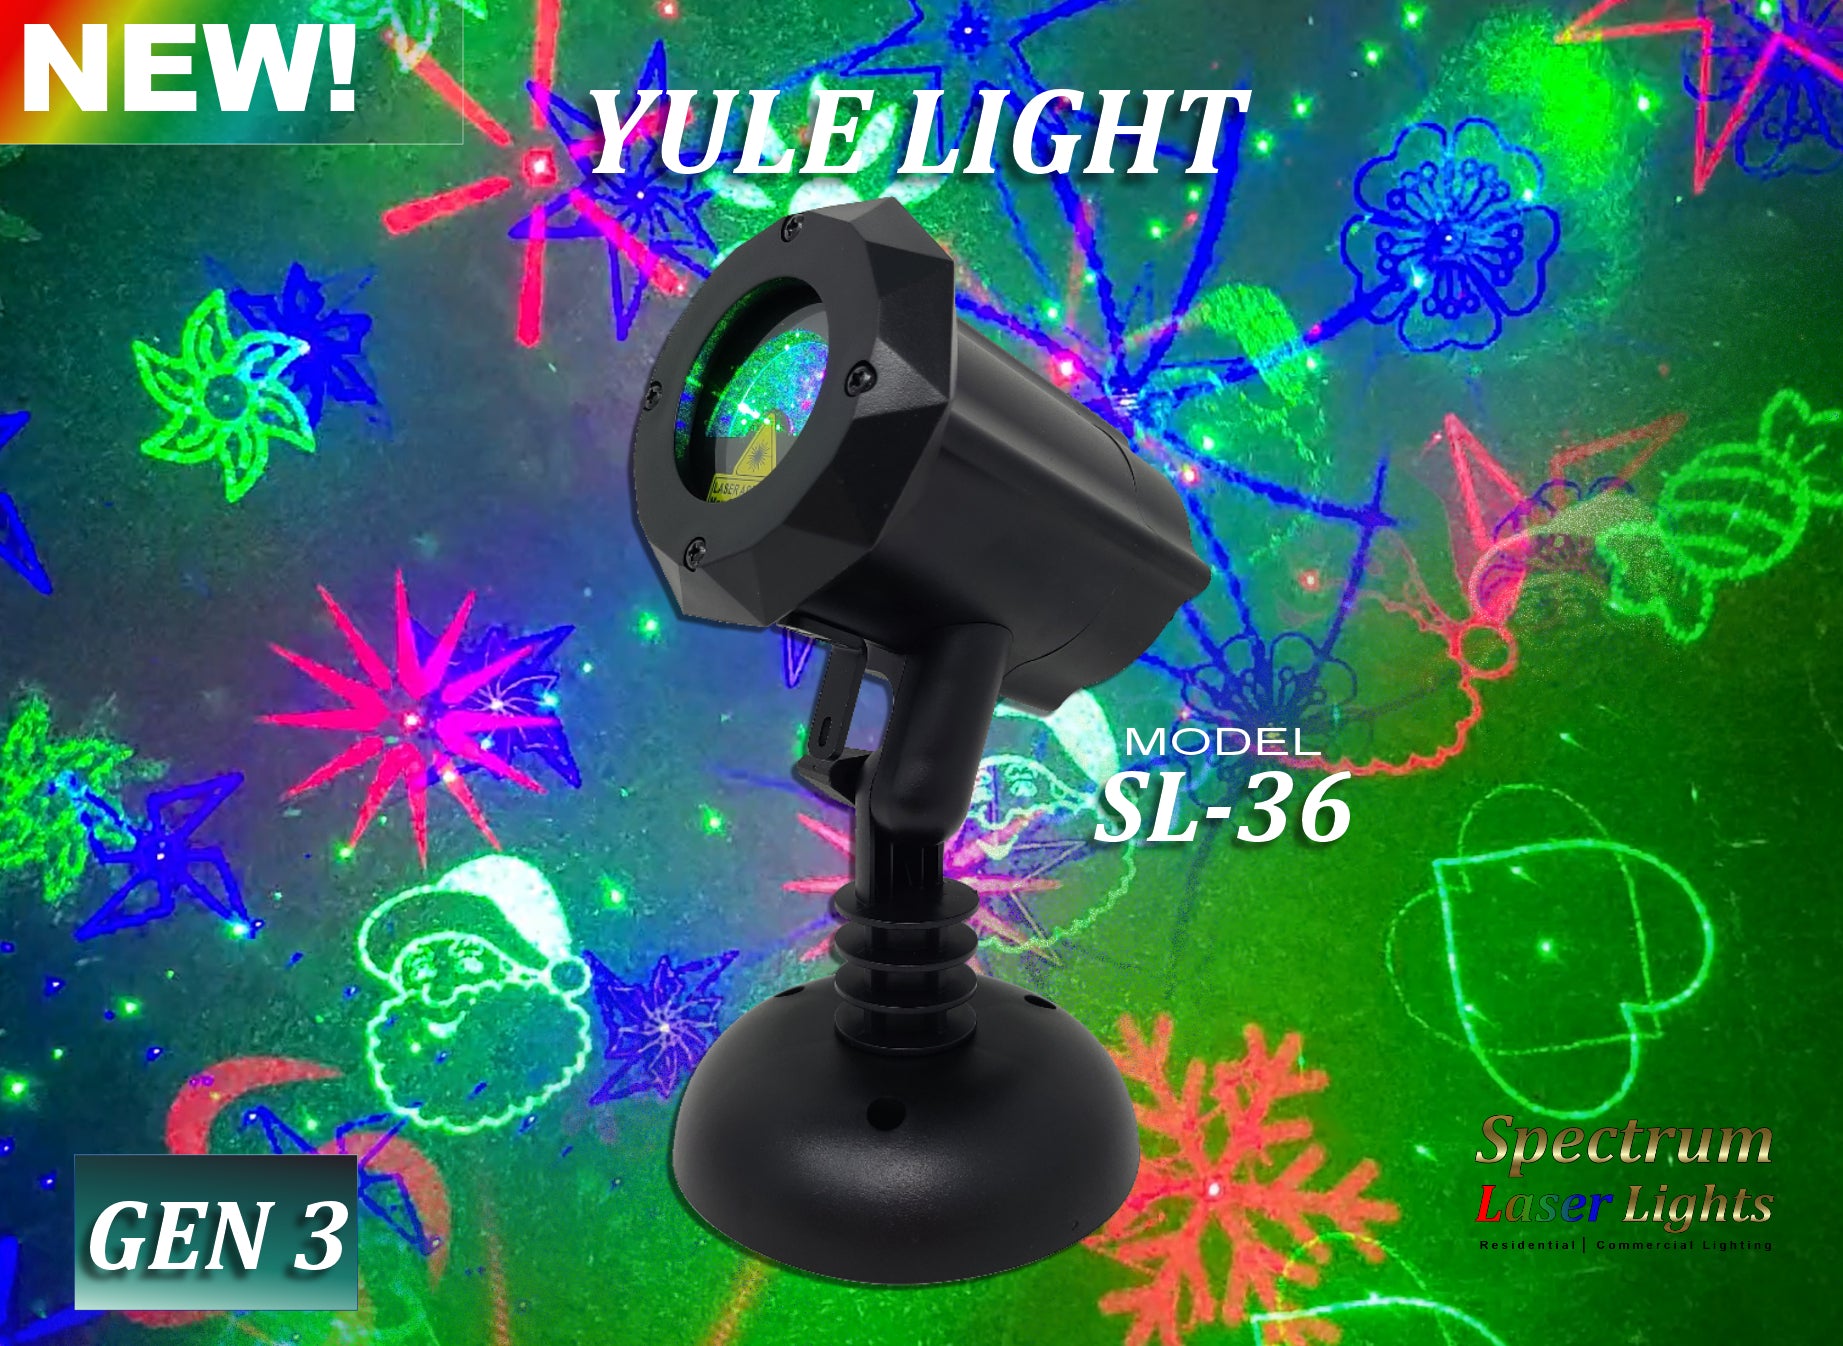 SL-36 - Yule Light - Multi-Pattern Red, Green Blue Laser Light | 3rd GEN